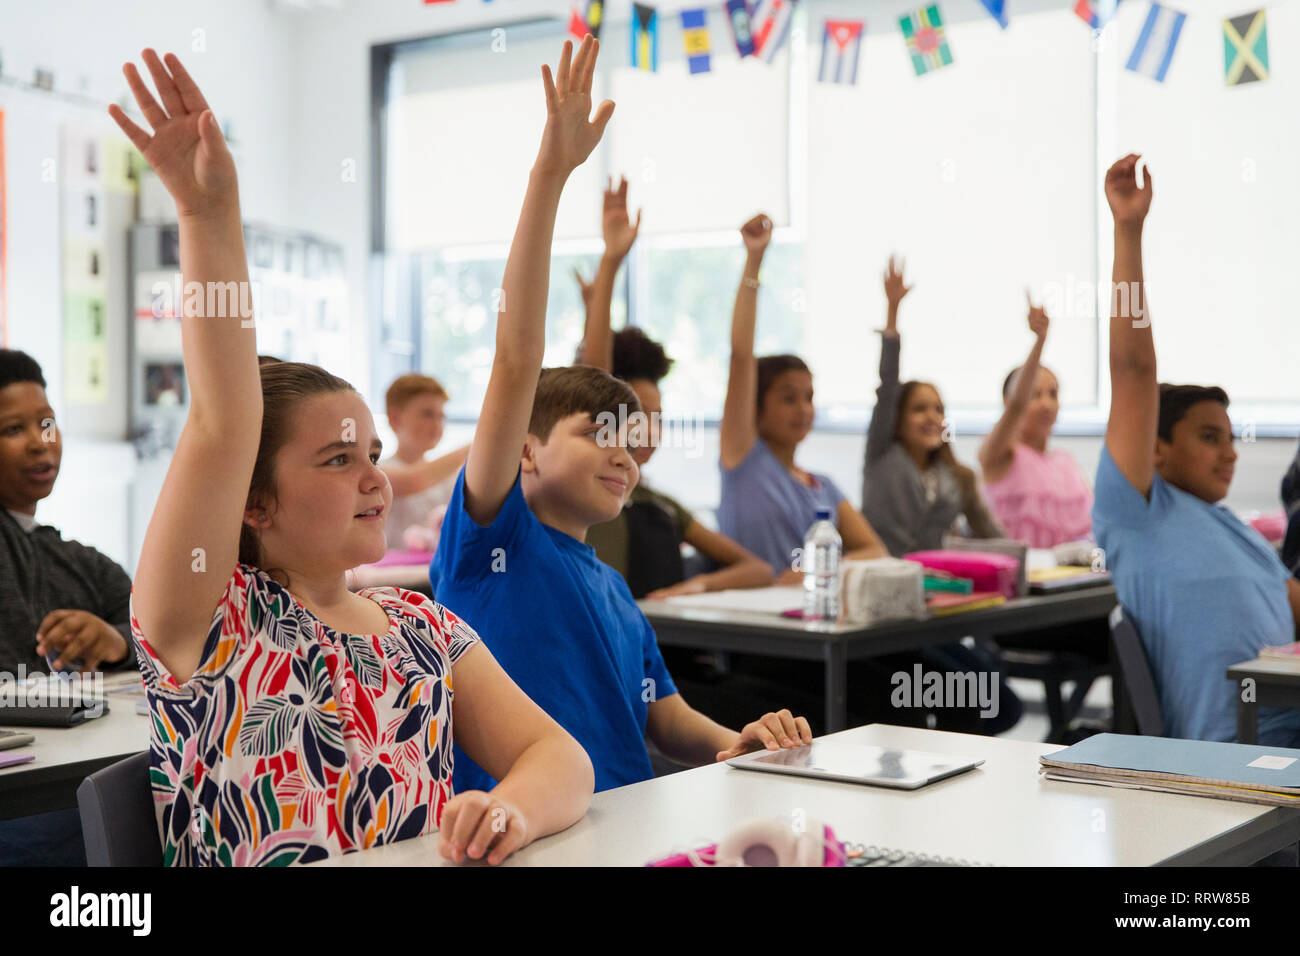 Désireux des élèves du premier cycle du secondaire avec les mains levées en classe Banque D'Images